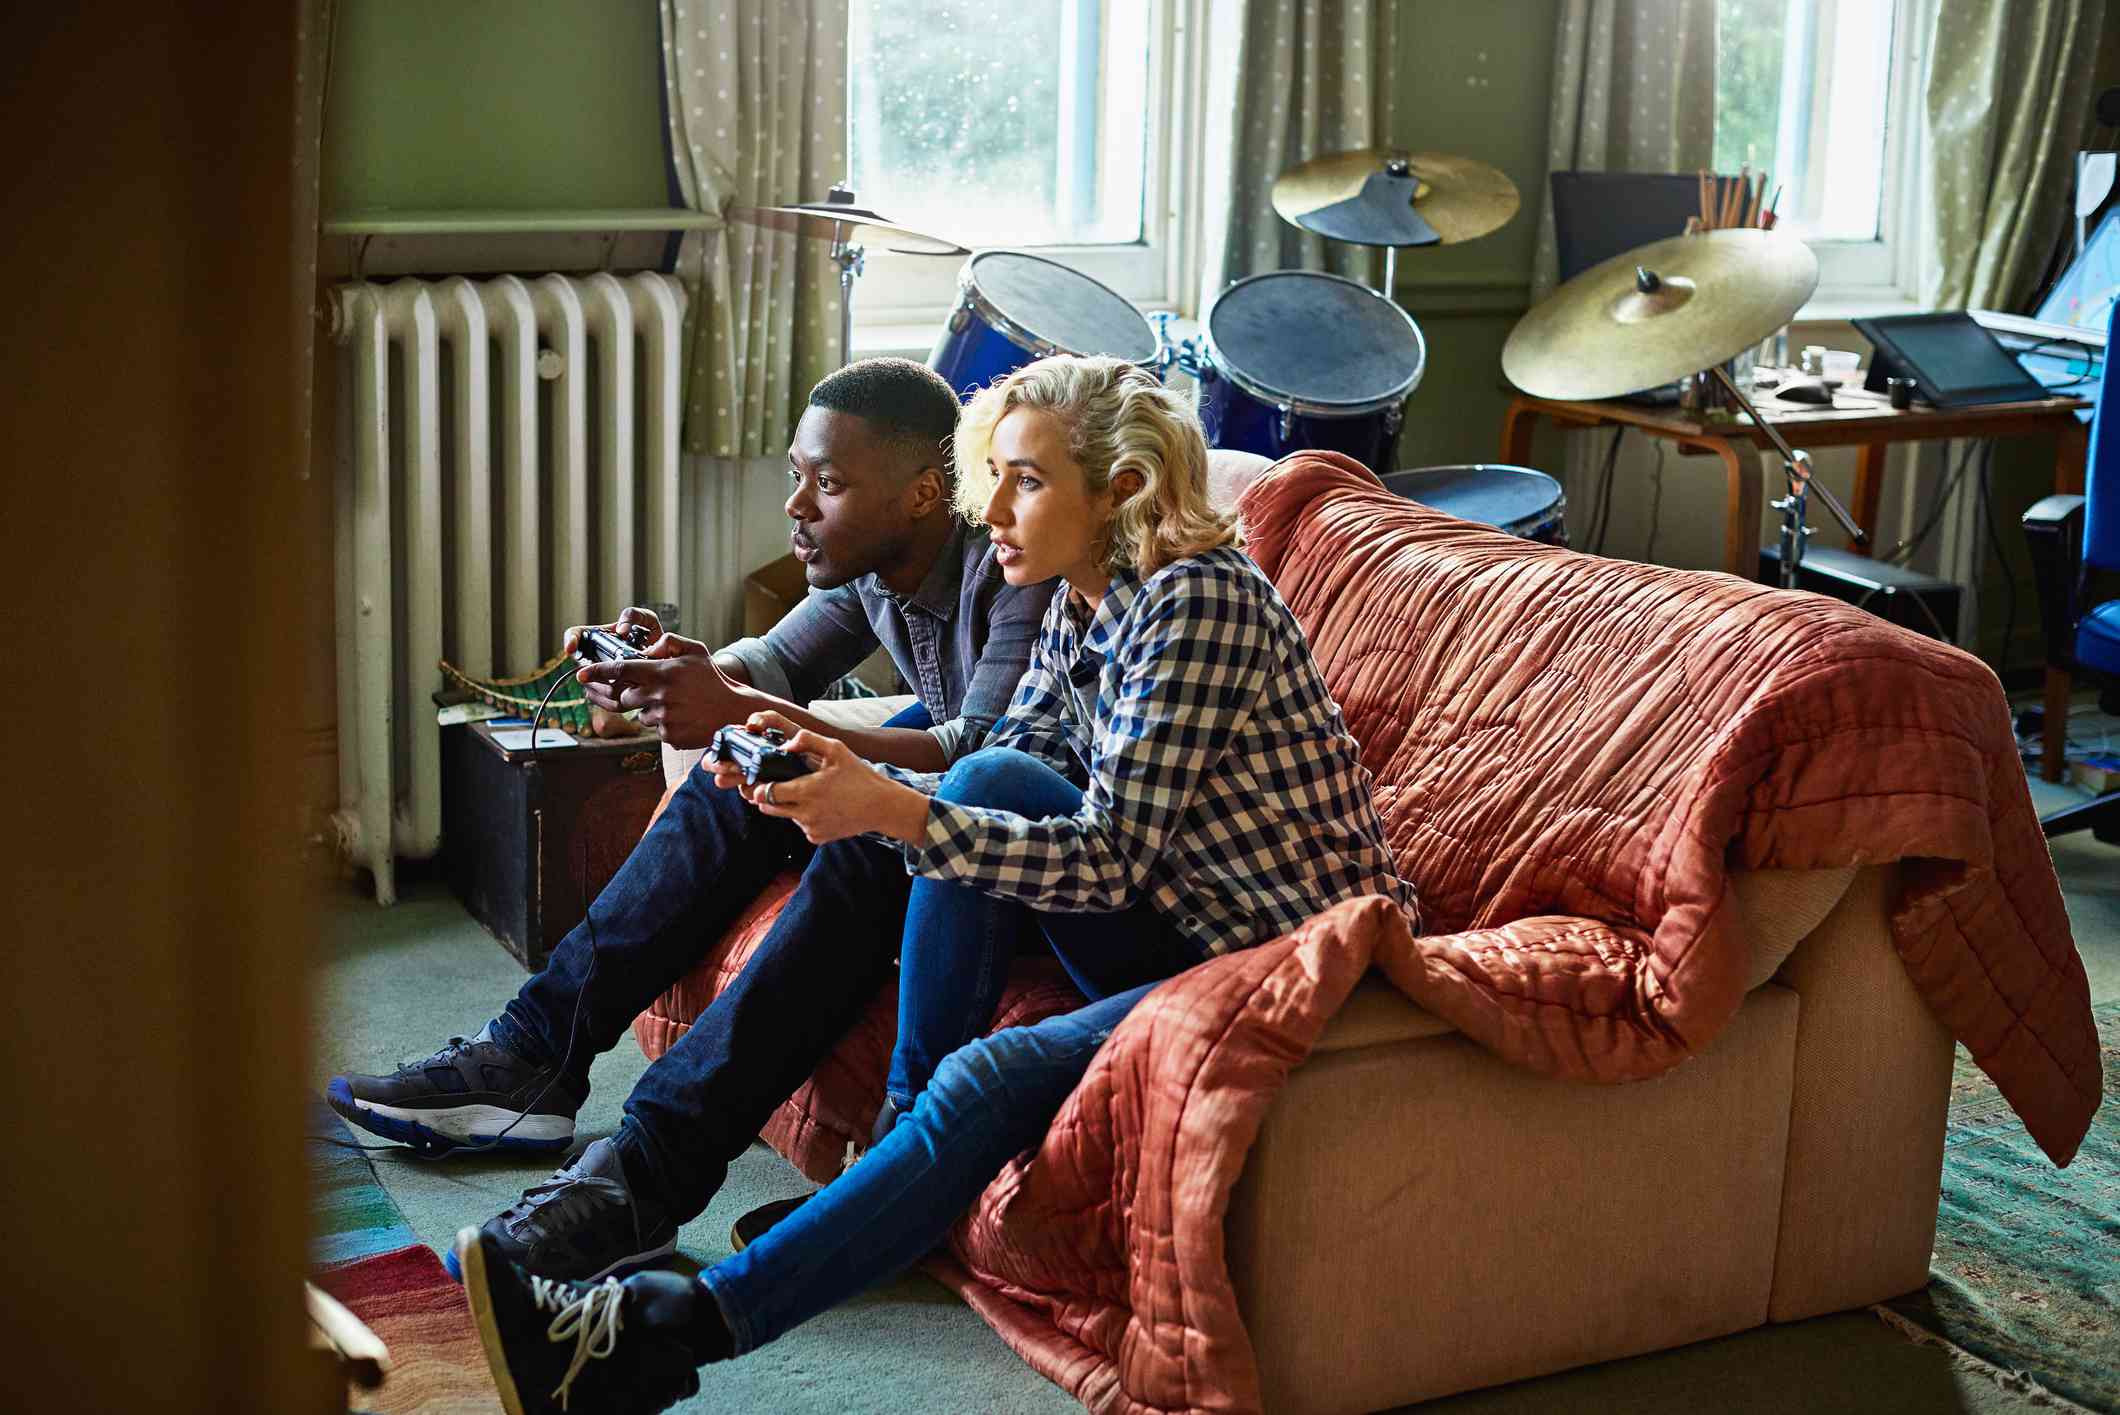 Dois jovens adultos jogando videogame, sentados em um sofá em um pequeno apartamento.